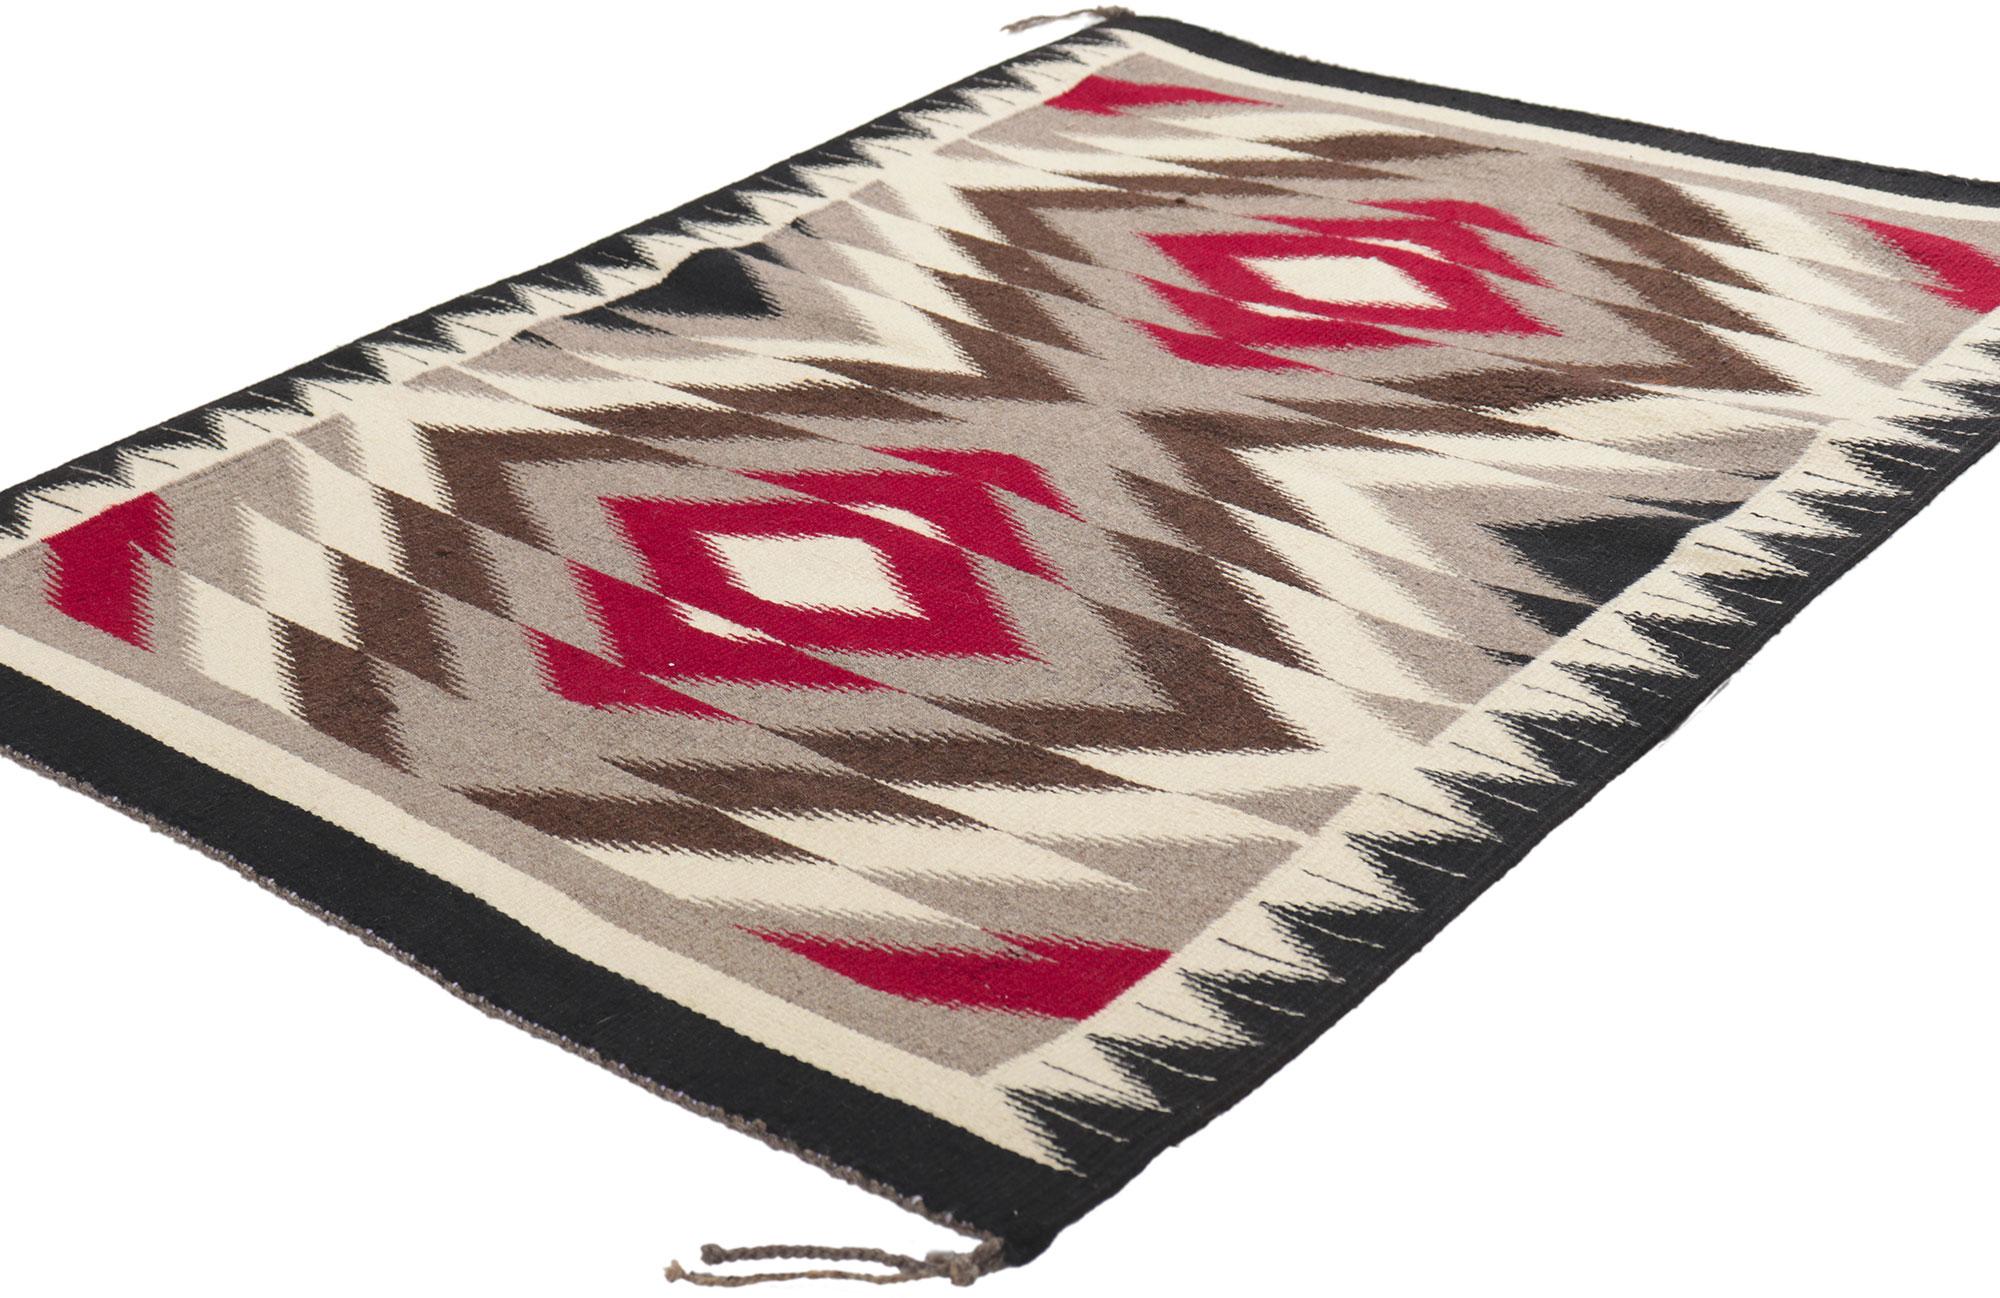 78424 Vintage Navajo Eye Dazzler Teppich, 02'05 x 03'05. Dieser handgewebte Vintage-Navajo-Teppich aus Wolle mit seinen winzigen Details und seinem ausdrucksstarken Design ist eine fesselnde Vision gewebter Schönheit. Das abgeschliffene Feld zeigt